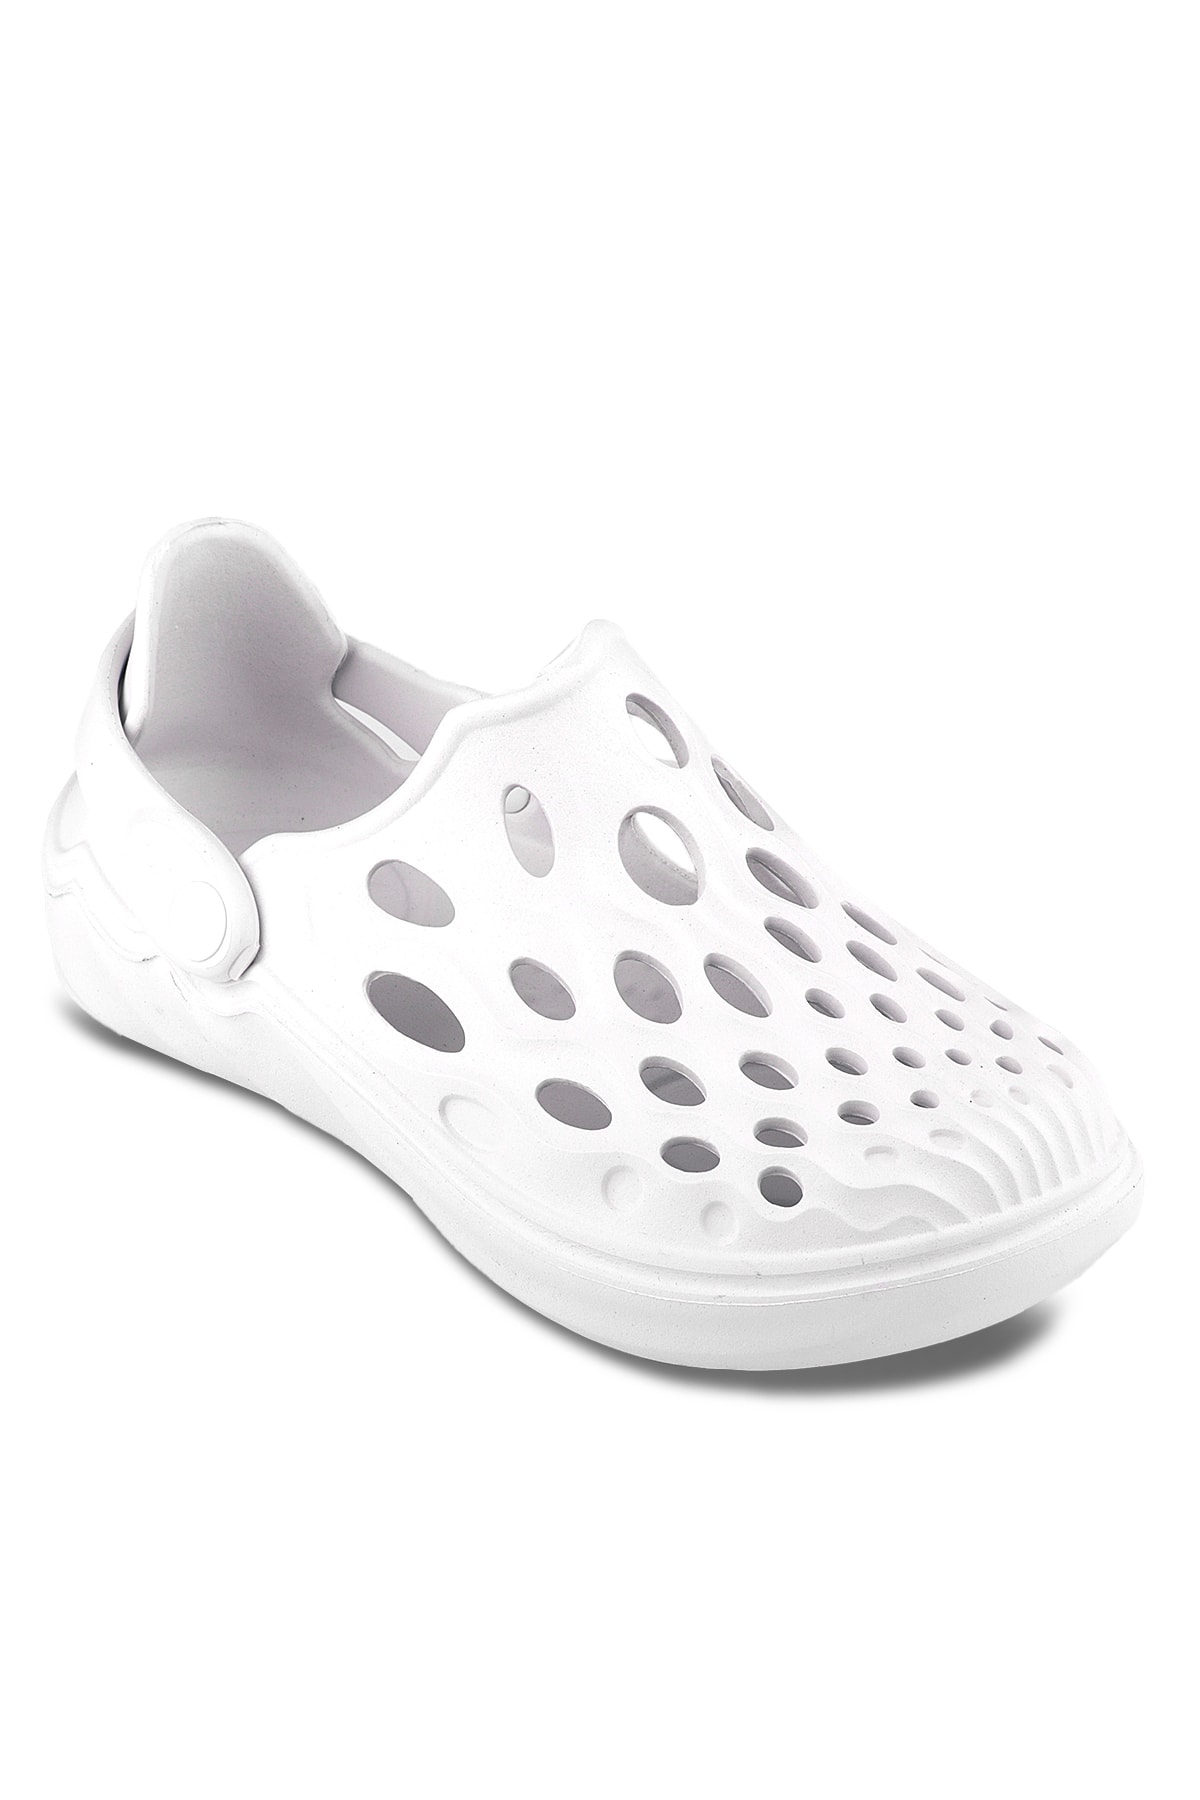 Esem E279.z.000 Women's Slippers White